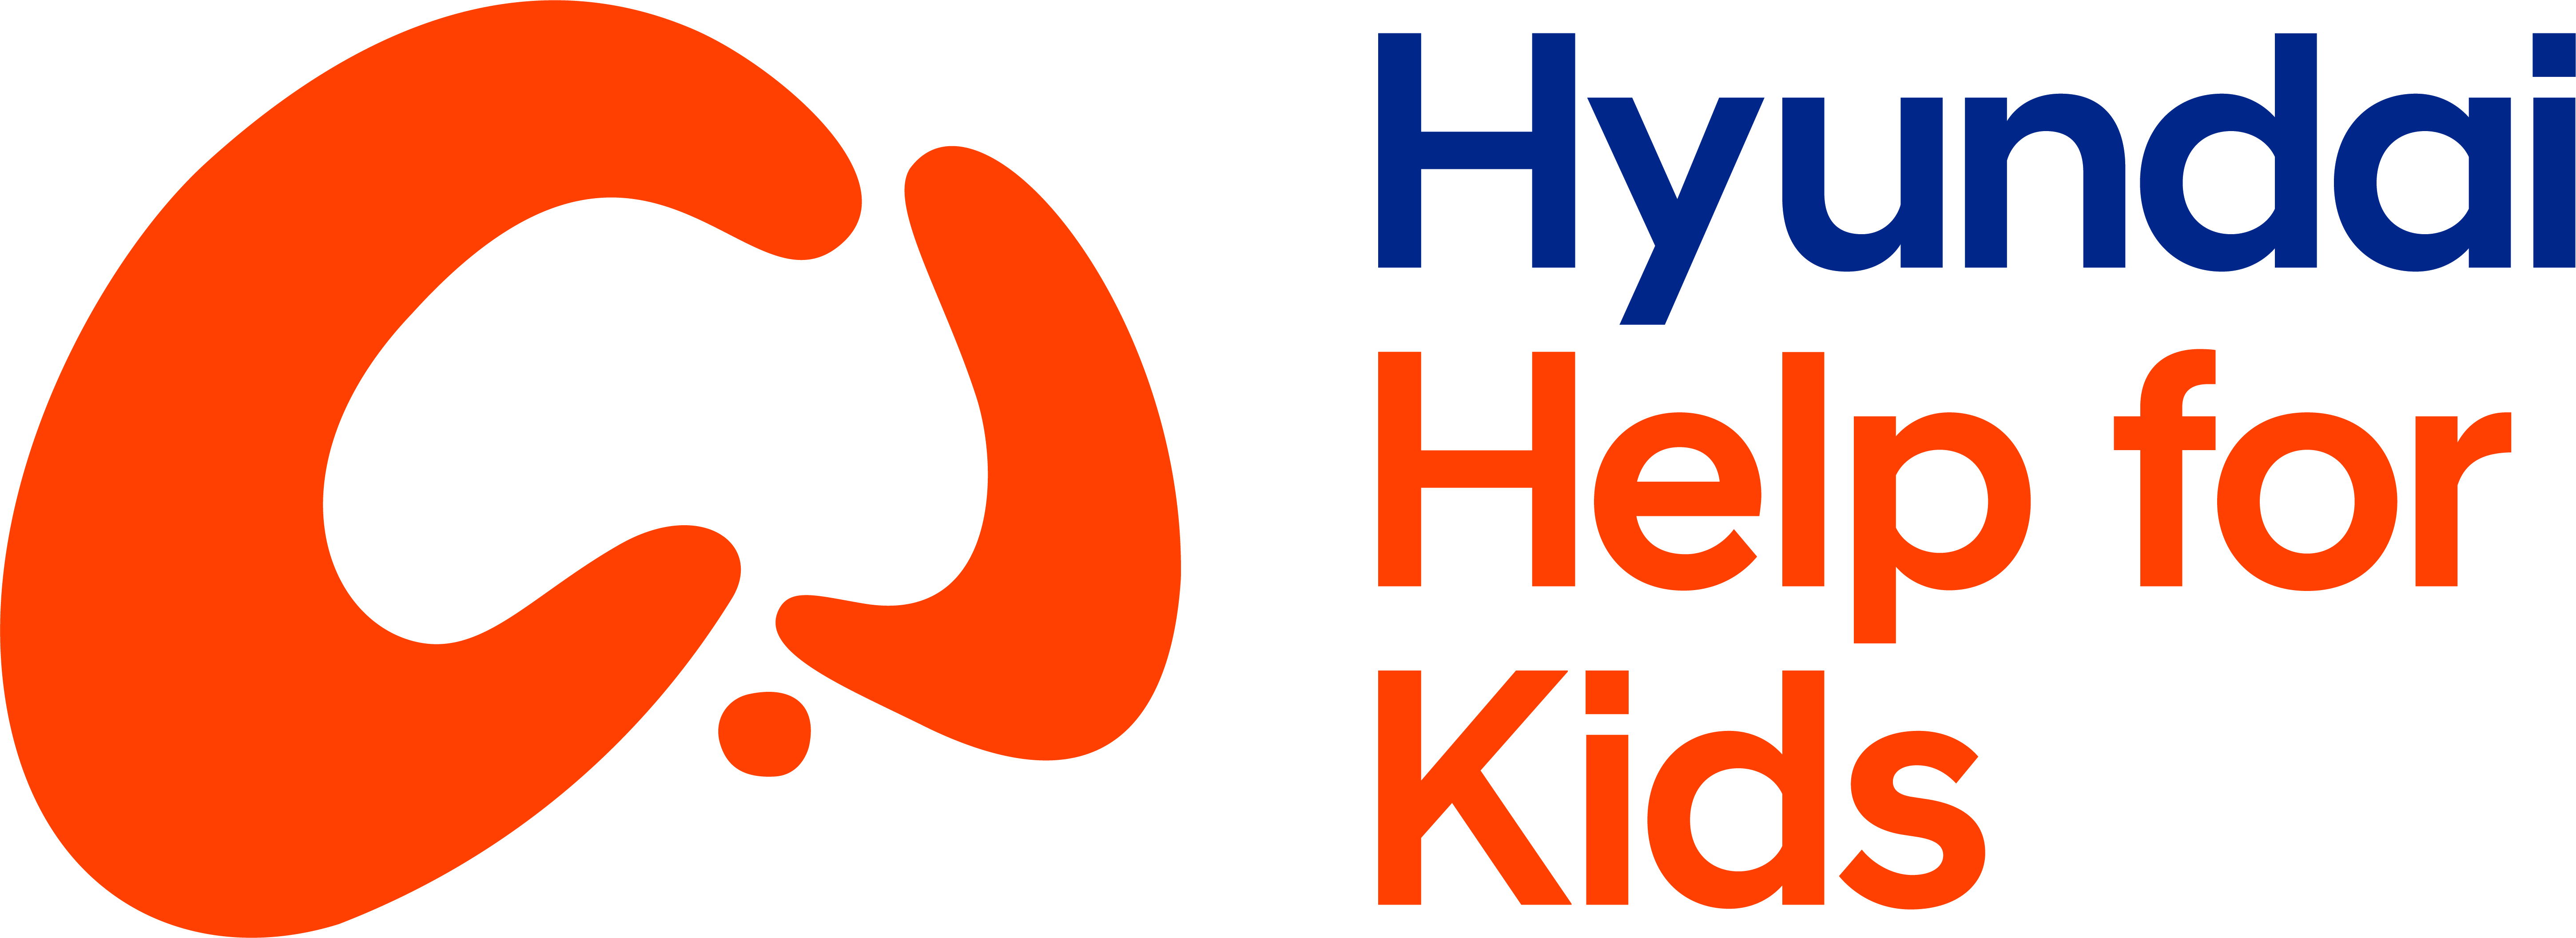 Hyundai Help For Kids Logo 2021